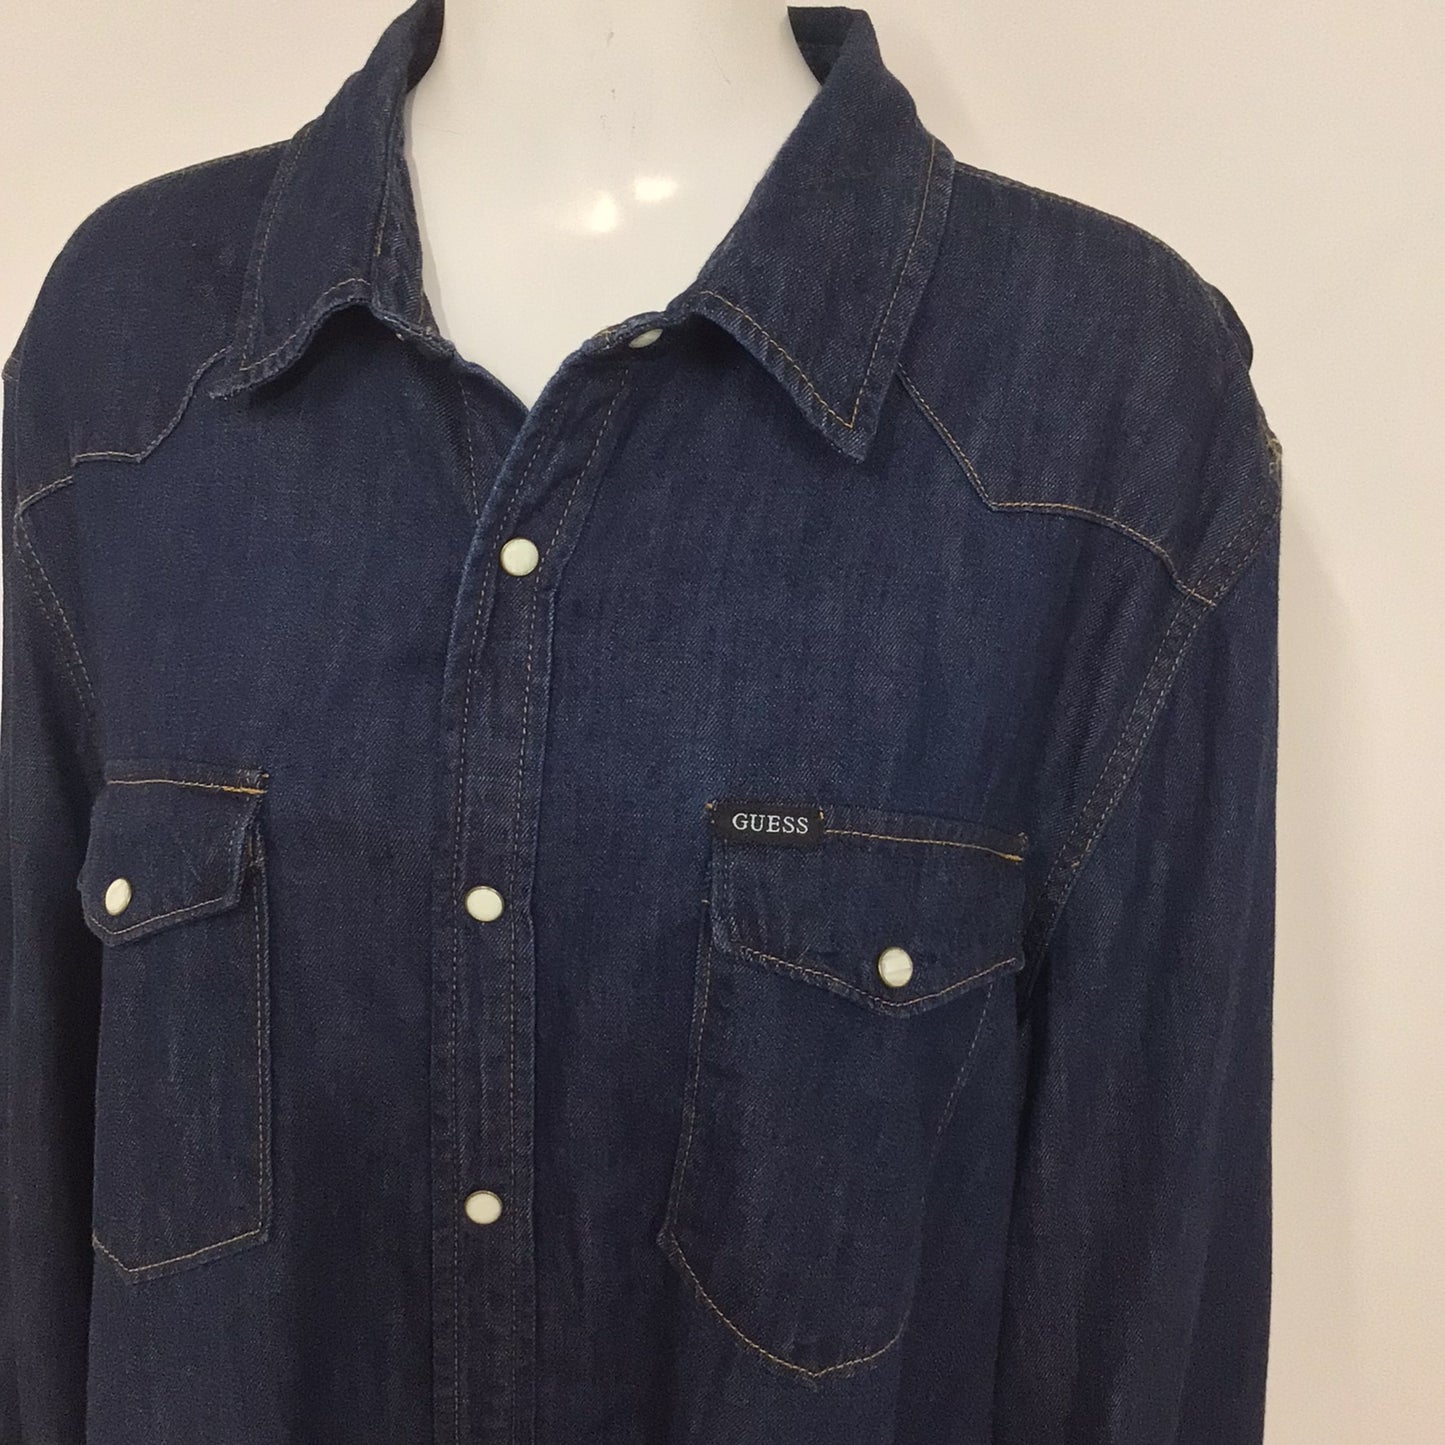 Guess Dark Blue Denim Shirt w/Popper Buttons 100% Cotton Size XL